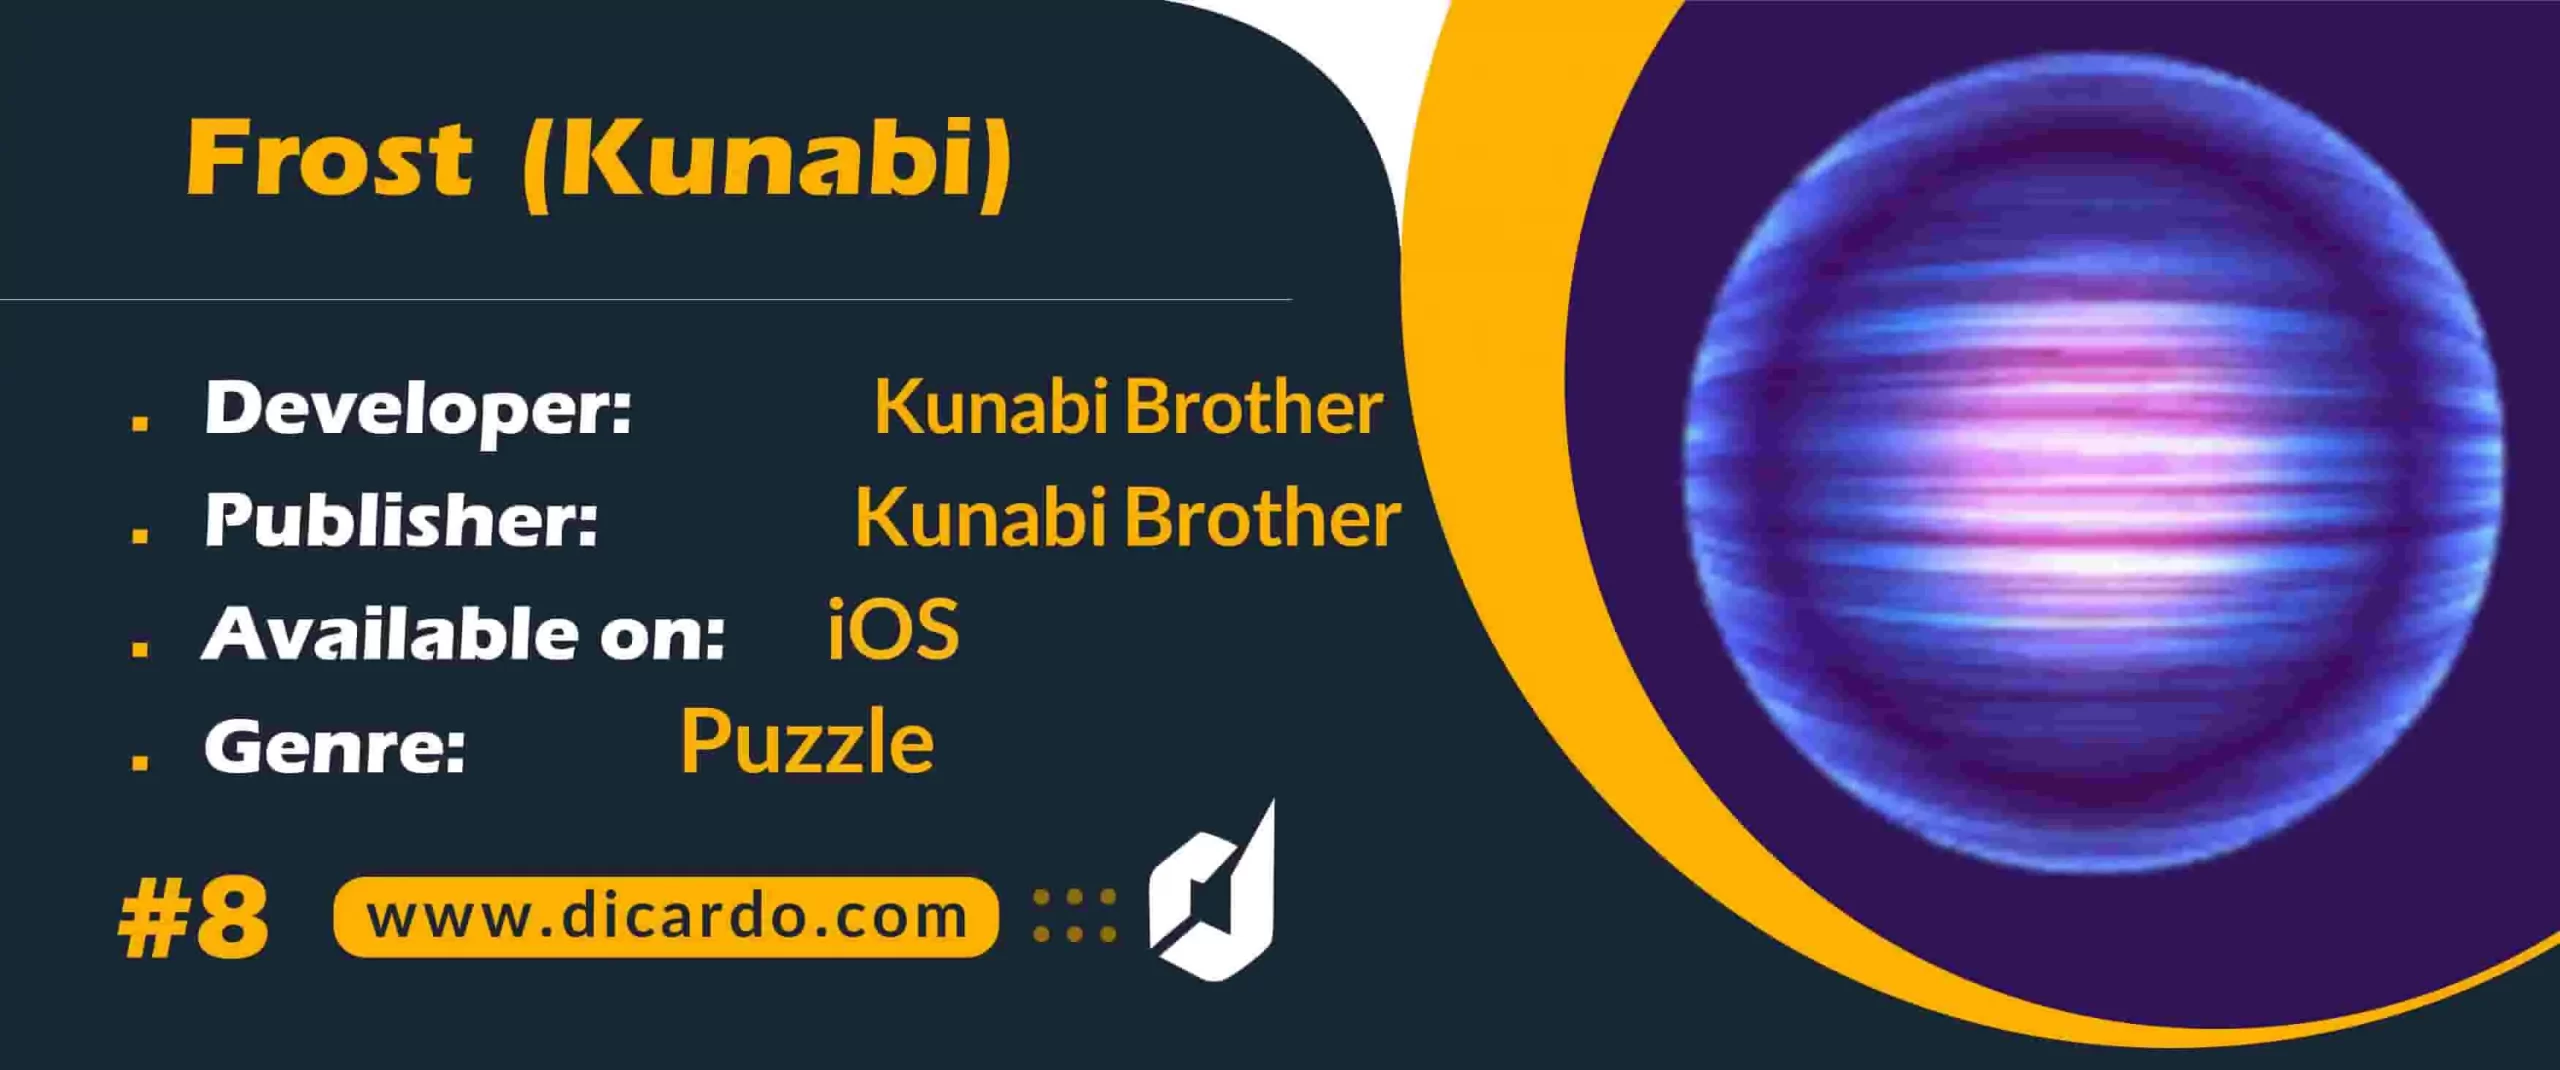 #8 فراست (کنابی) Frost (Kunabi) از بهترین بازیها برای iOS با فضای معمایی